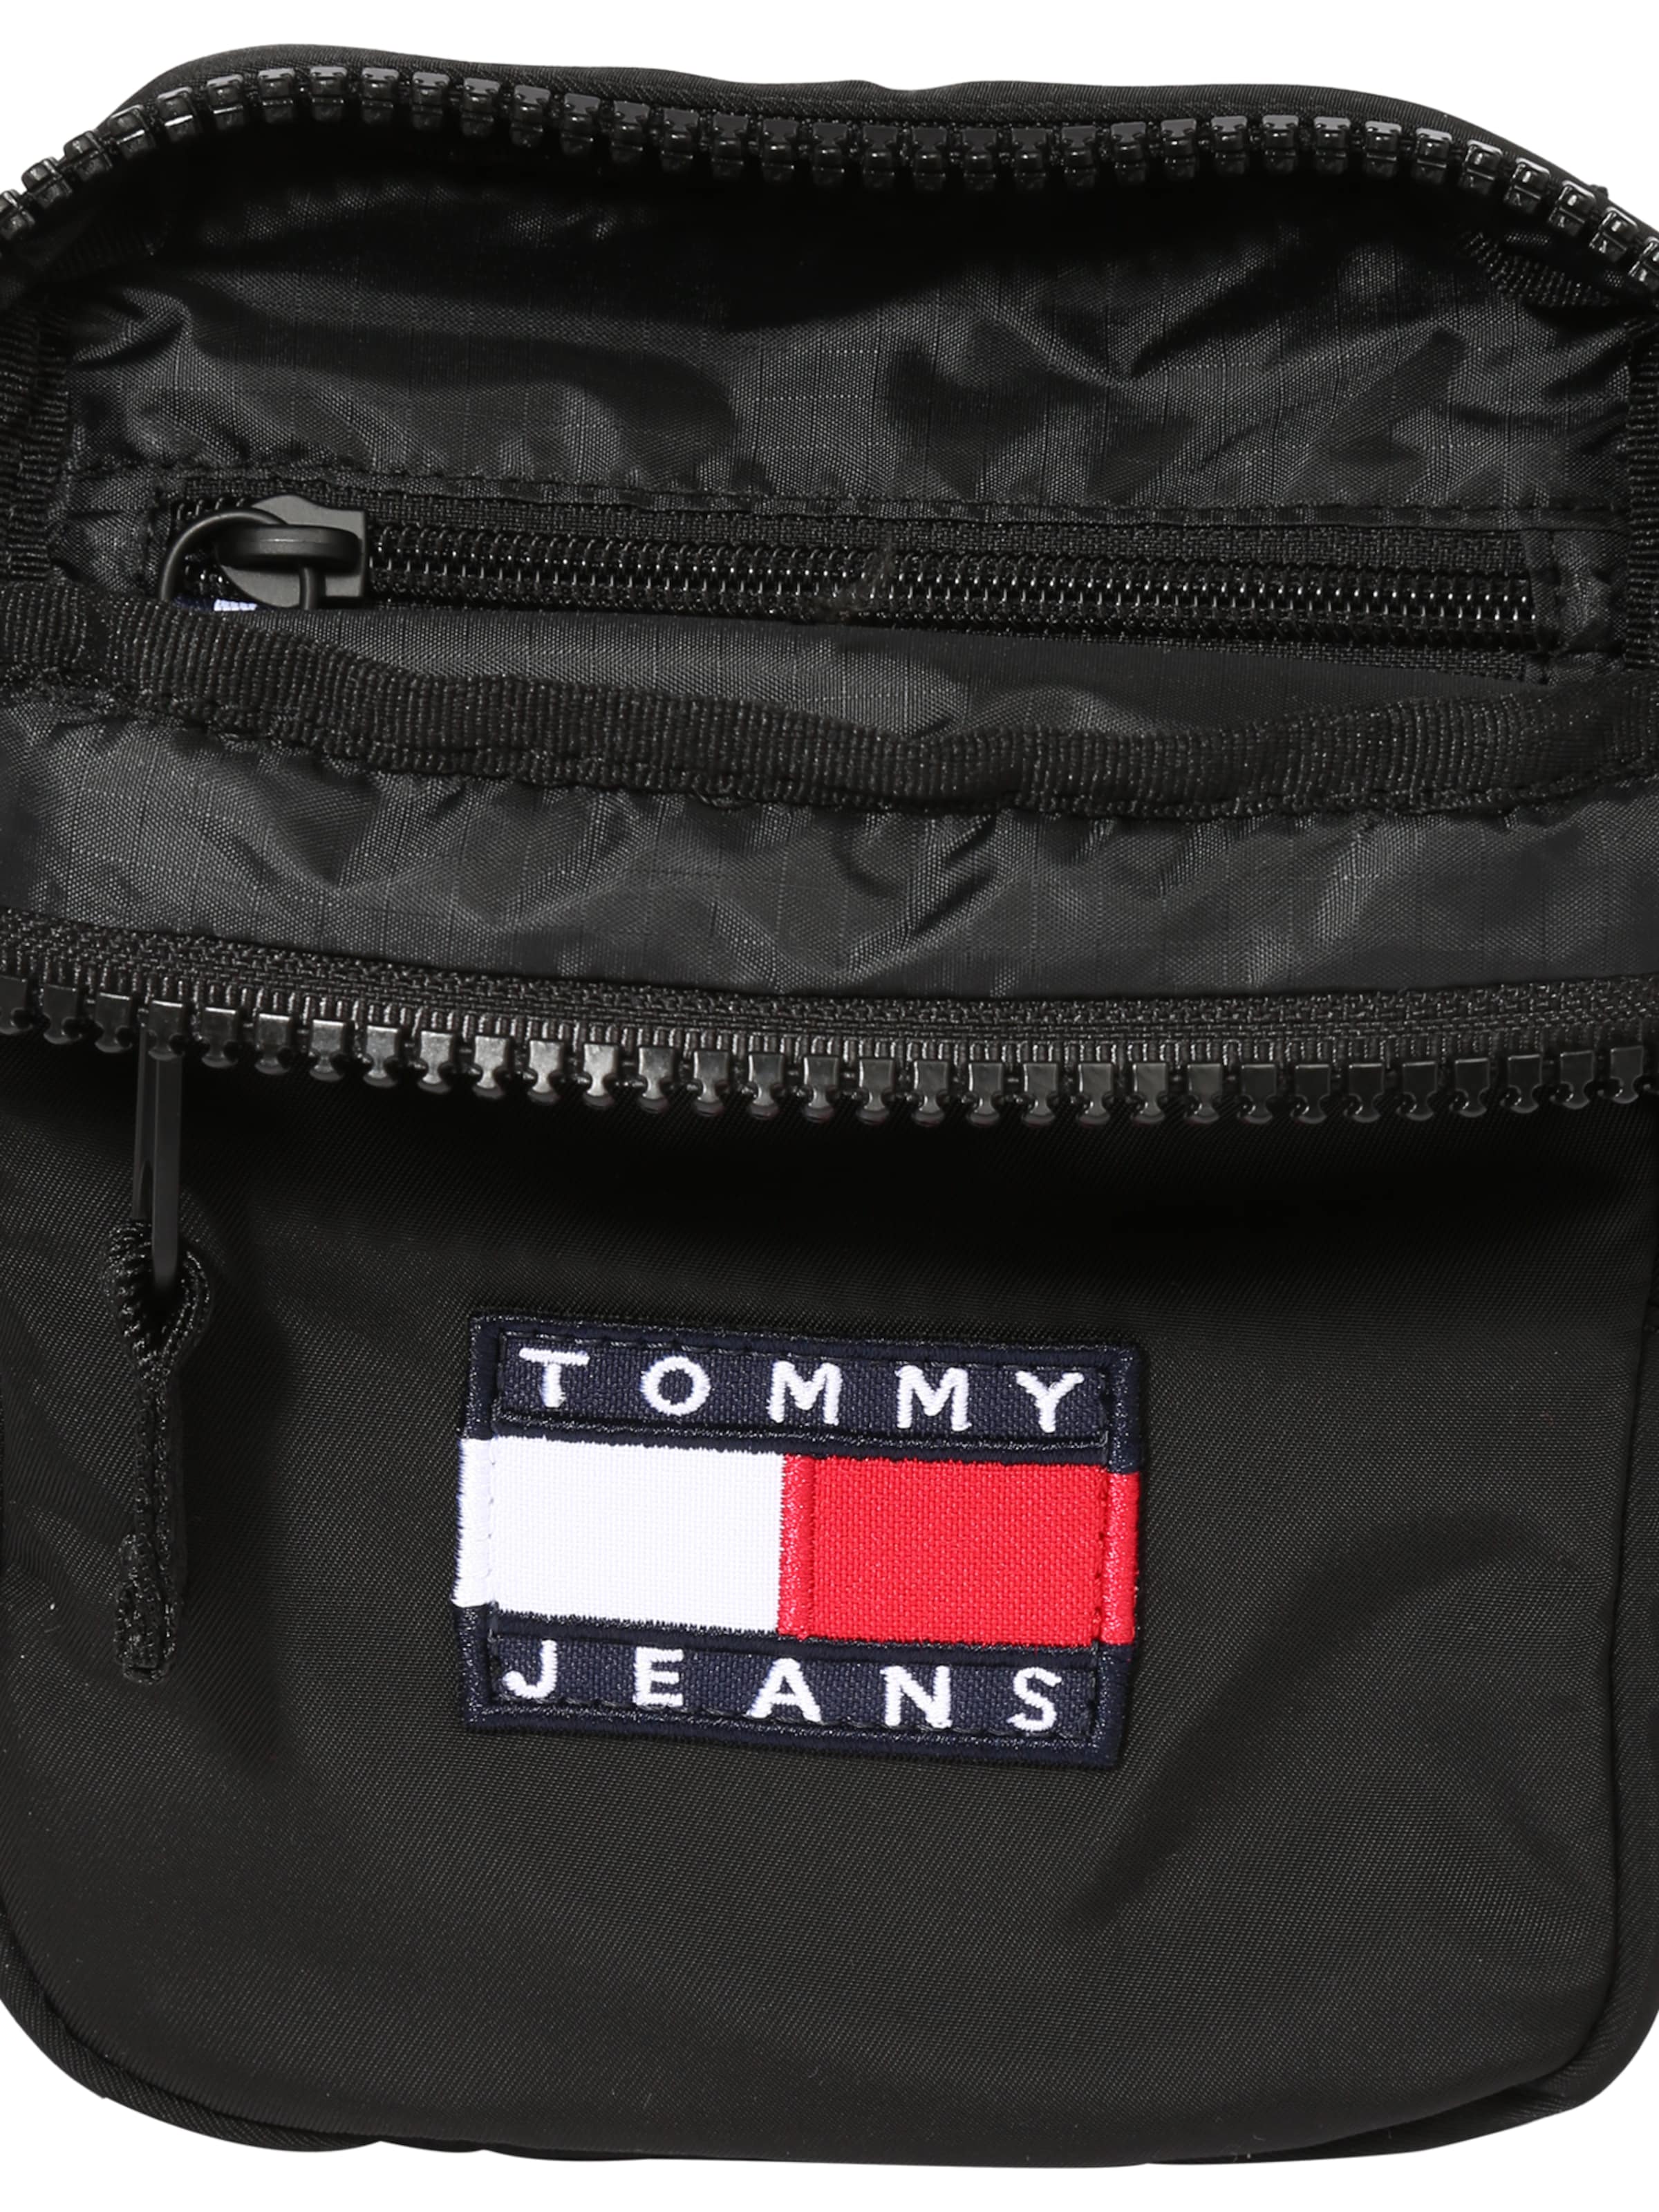 Männer Taschen & Rucksäcke Tommy Jeans Umhängetasche in Schwarz - IG99458